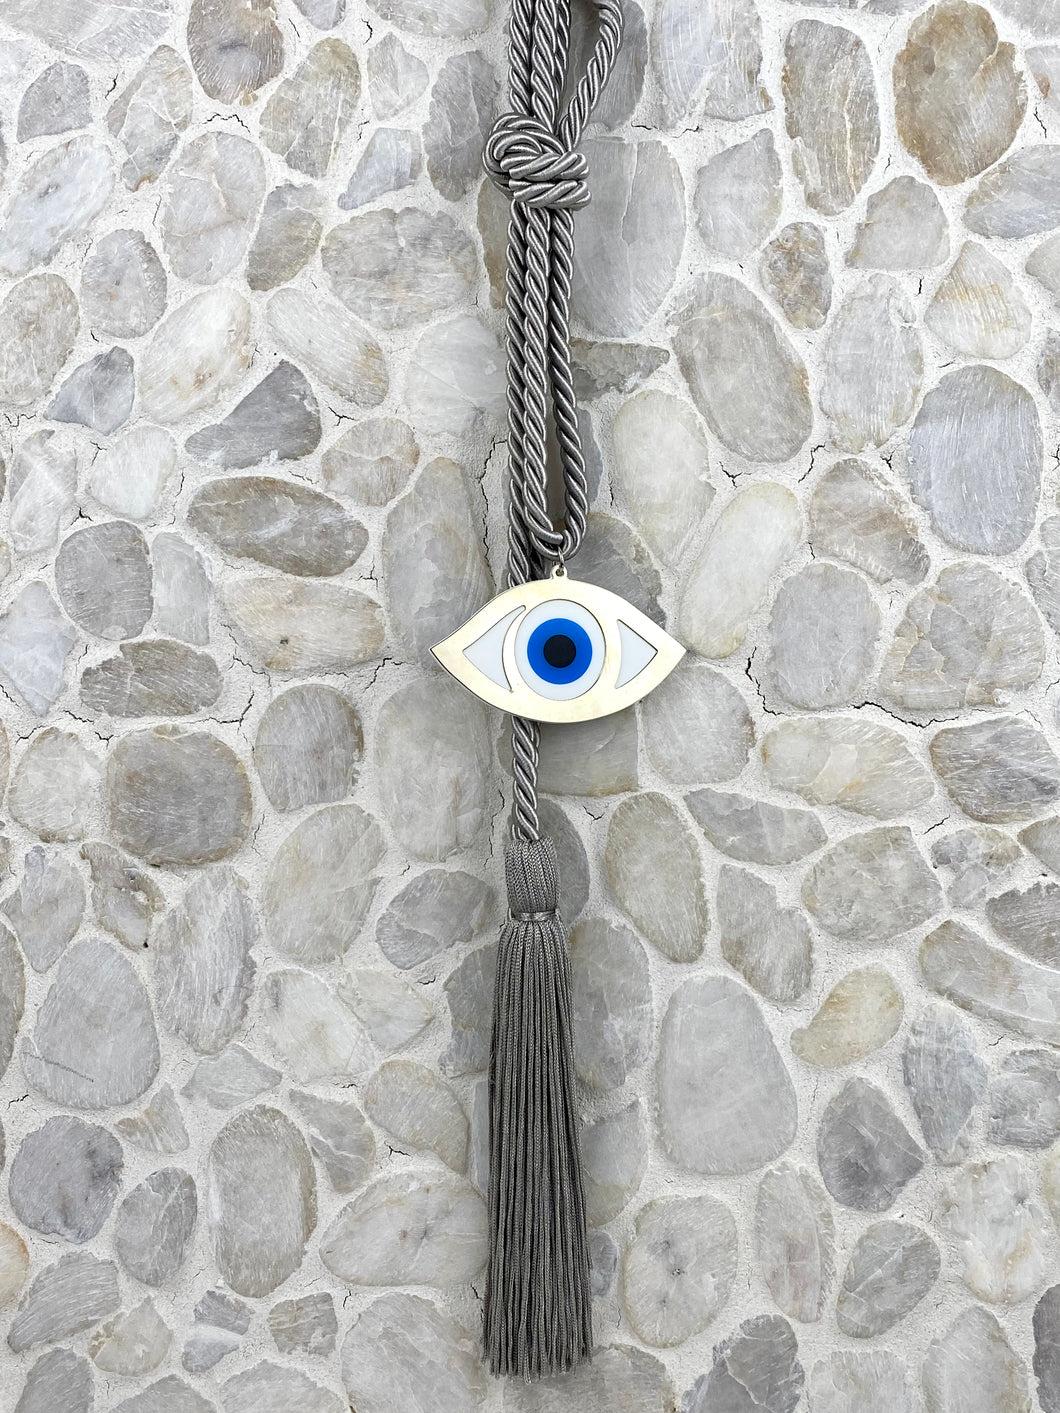 Pearl Grey Rope Evil Eye  with tassel Gouri 202115  measures 22”  in length